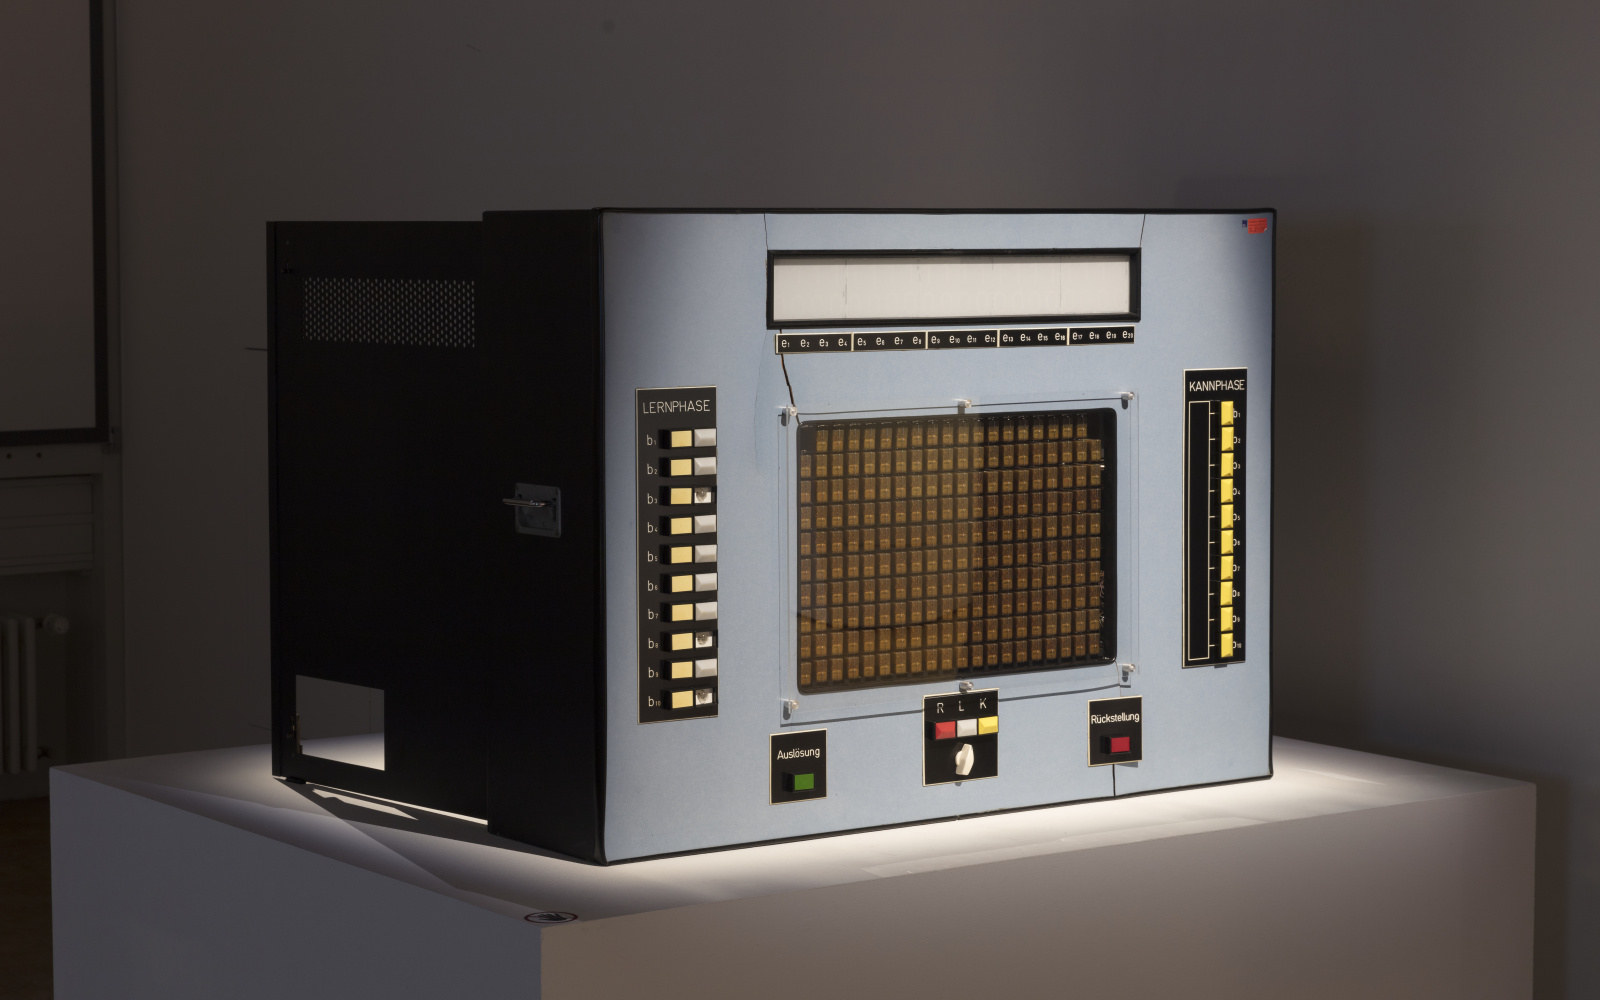 Ein Lerncomputer aus den 60ern, rechteckig, in Grau und mit vielen Knöpfen.